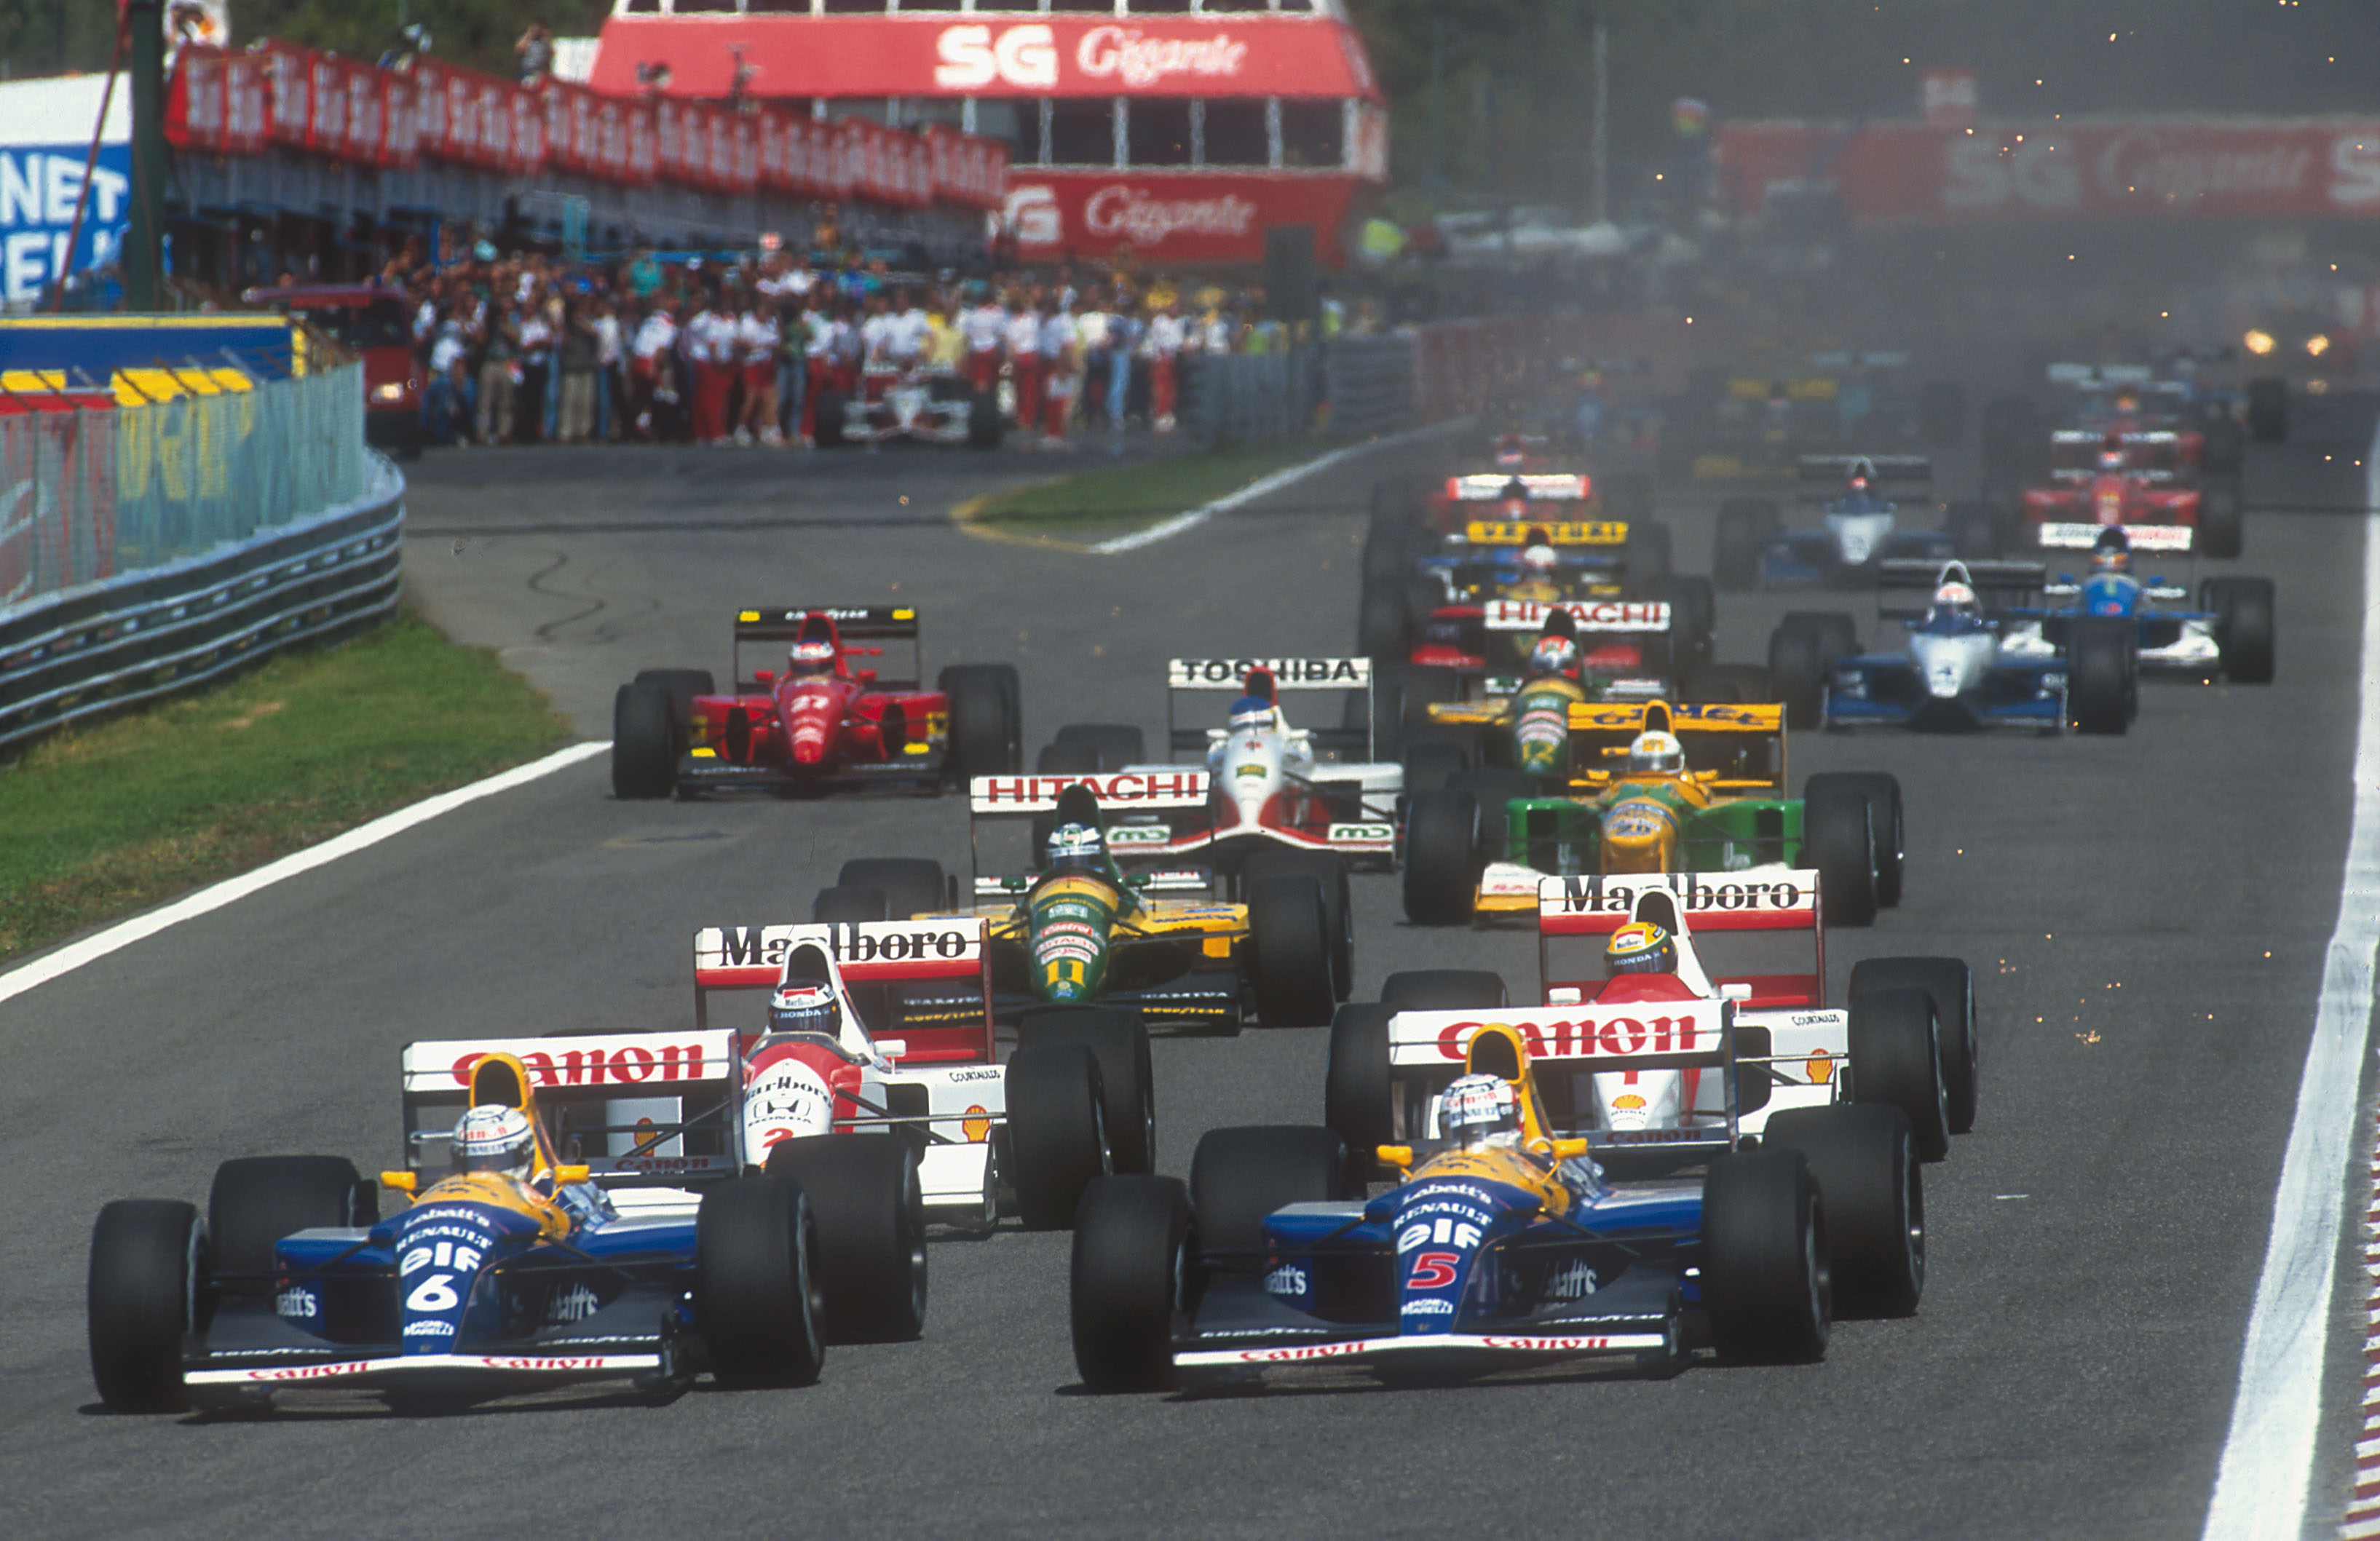 The start of a Formula 1 Grand Prix in 1992. 